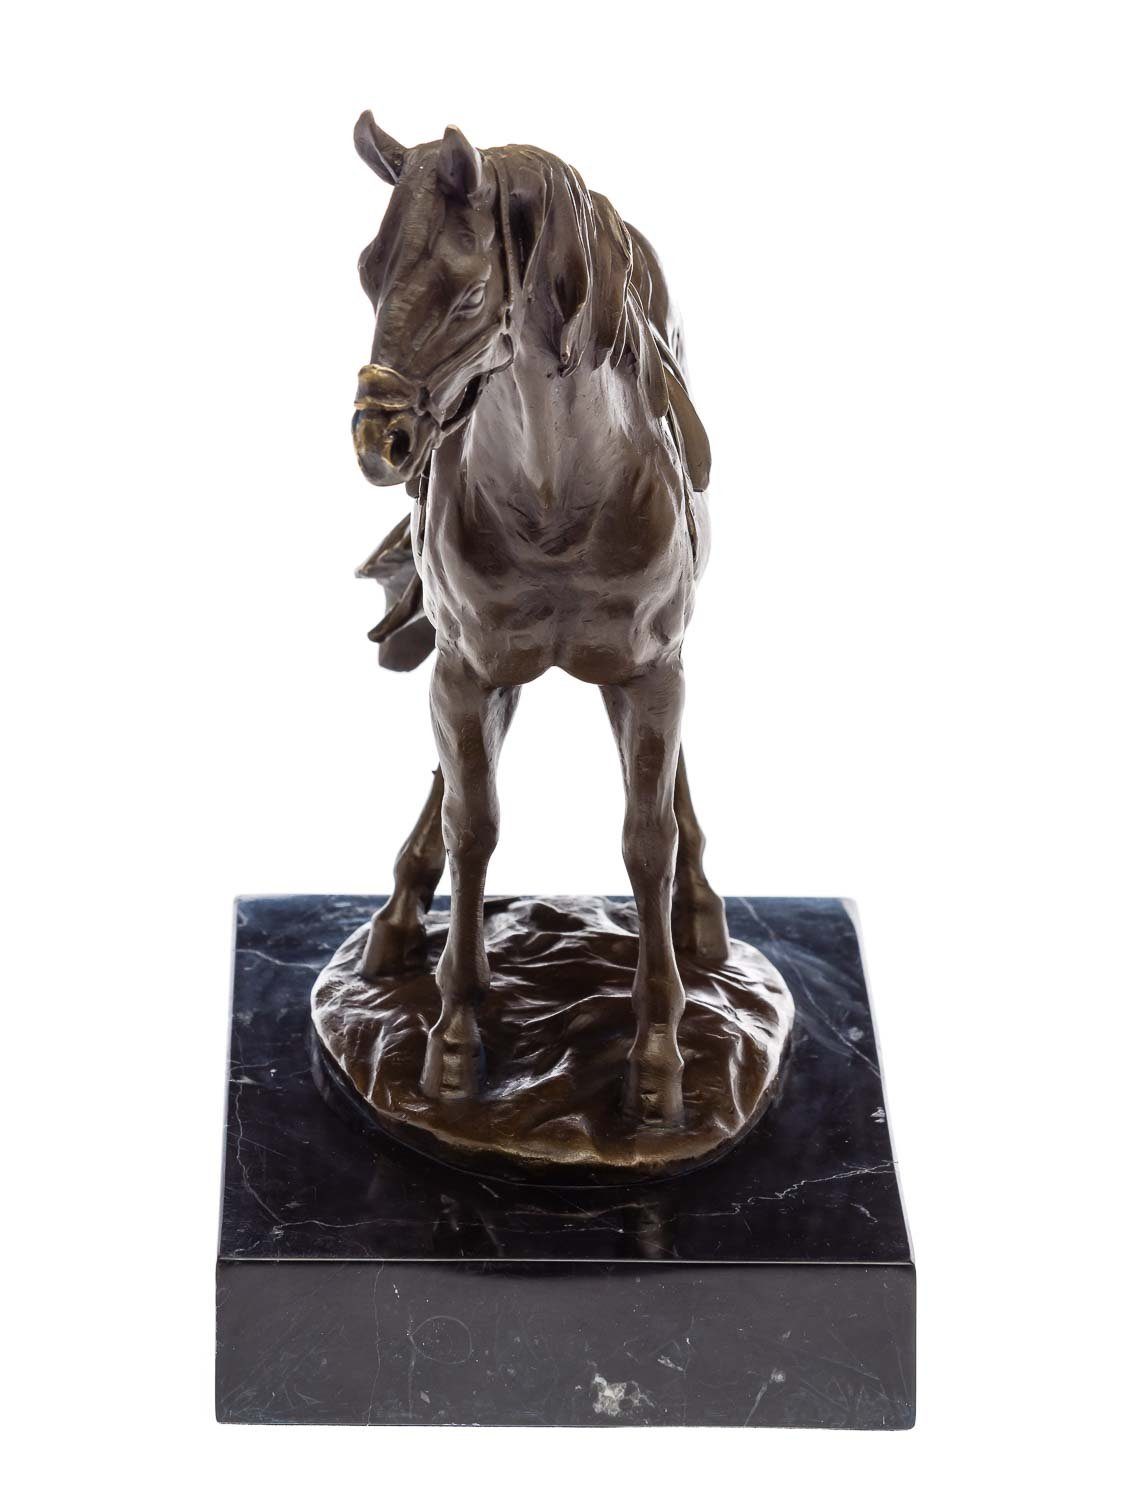 Pferd Aubaho Bronzeskulptur auf Figur Antik-Stil Statu im Bronze Steinplinthe Skulptur